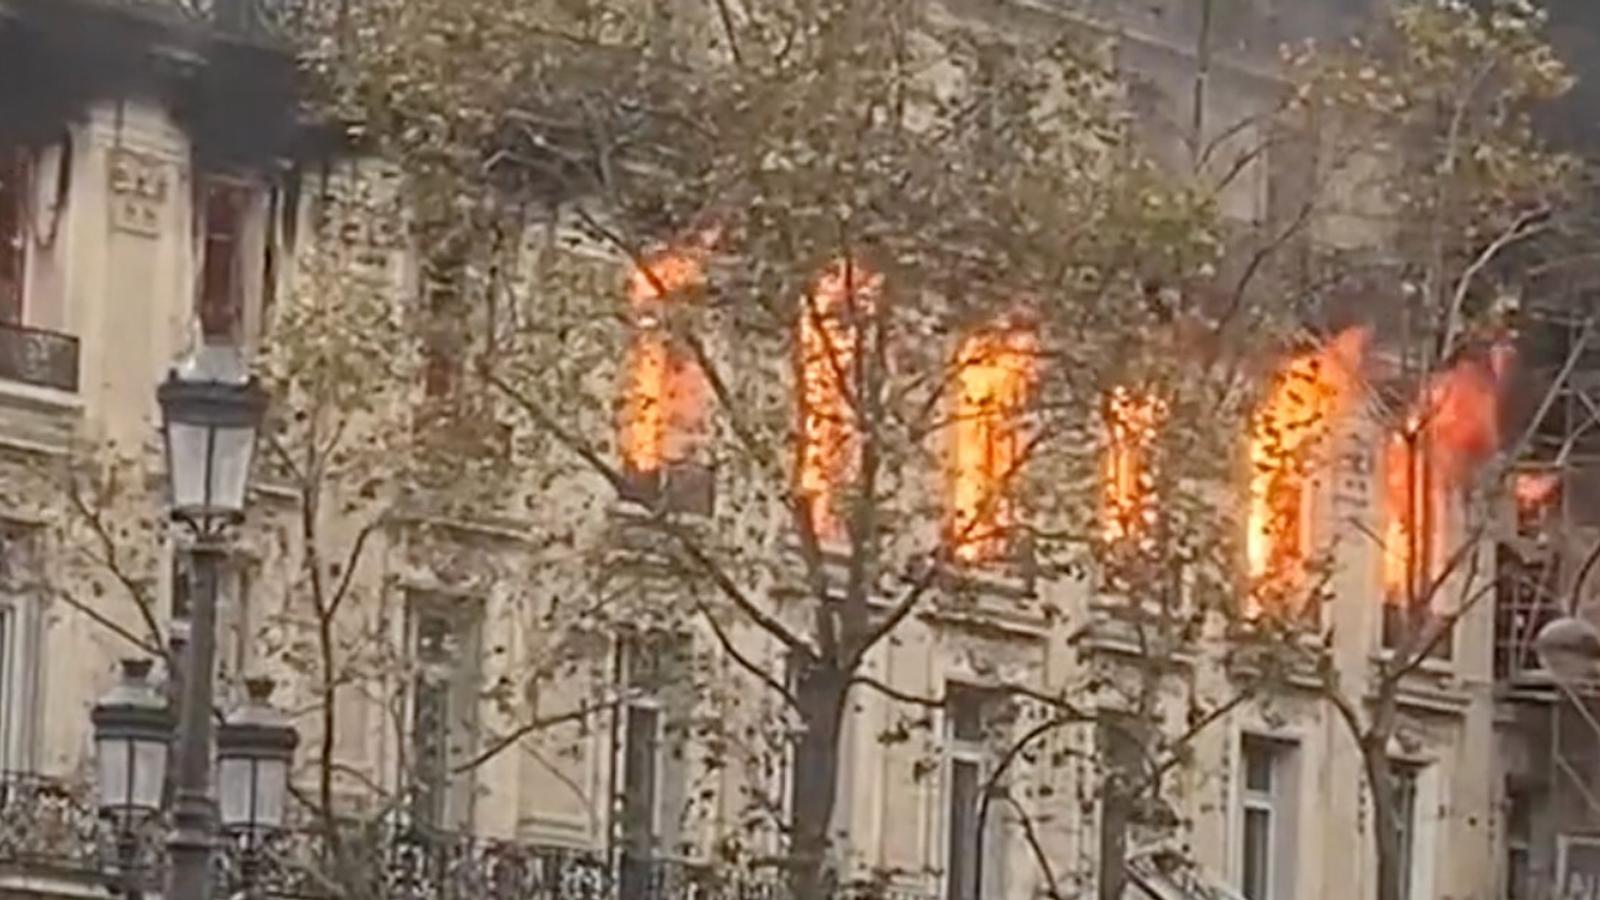 Important incendie près de la place de l'Opéra à Paris